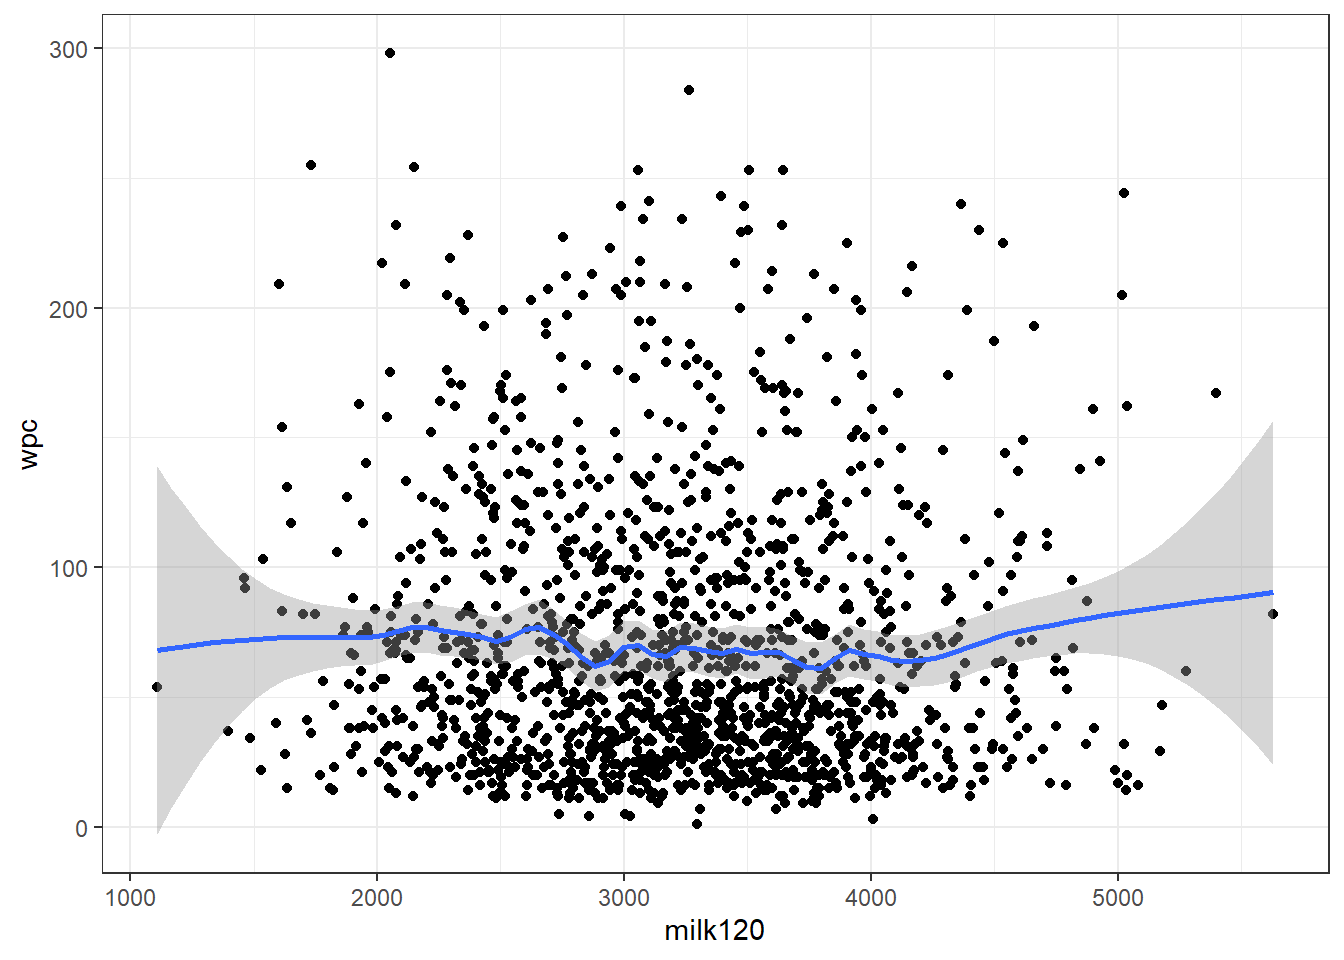 Relation entre la production de lait en 120j (milk120) et le nombre de jours jusqu’à la saillie fécondante (wpc) avec courbe lissée avec un facteur de 0.2.